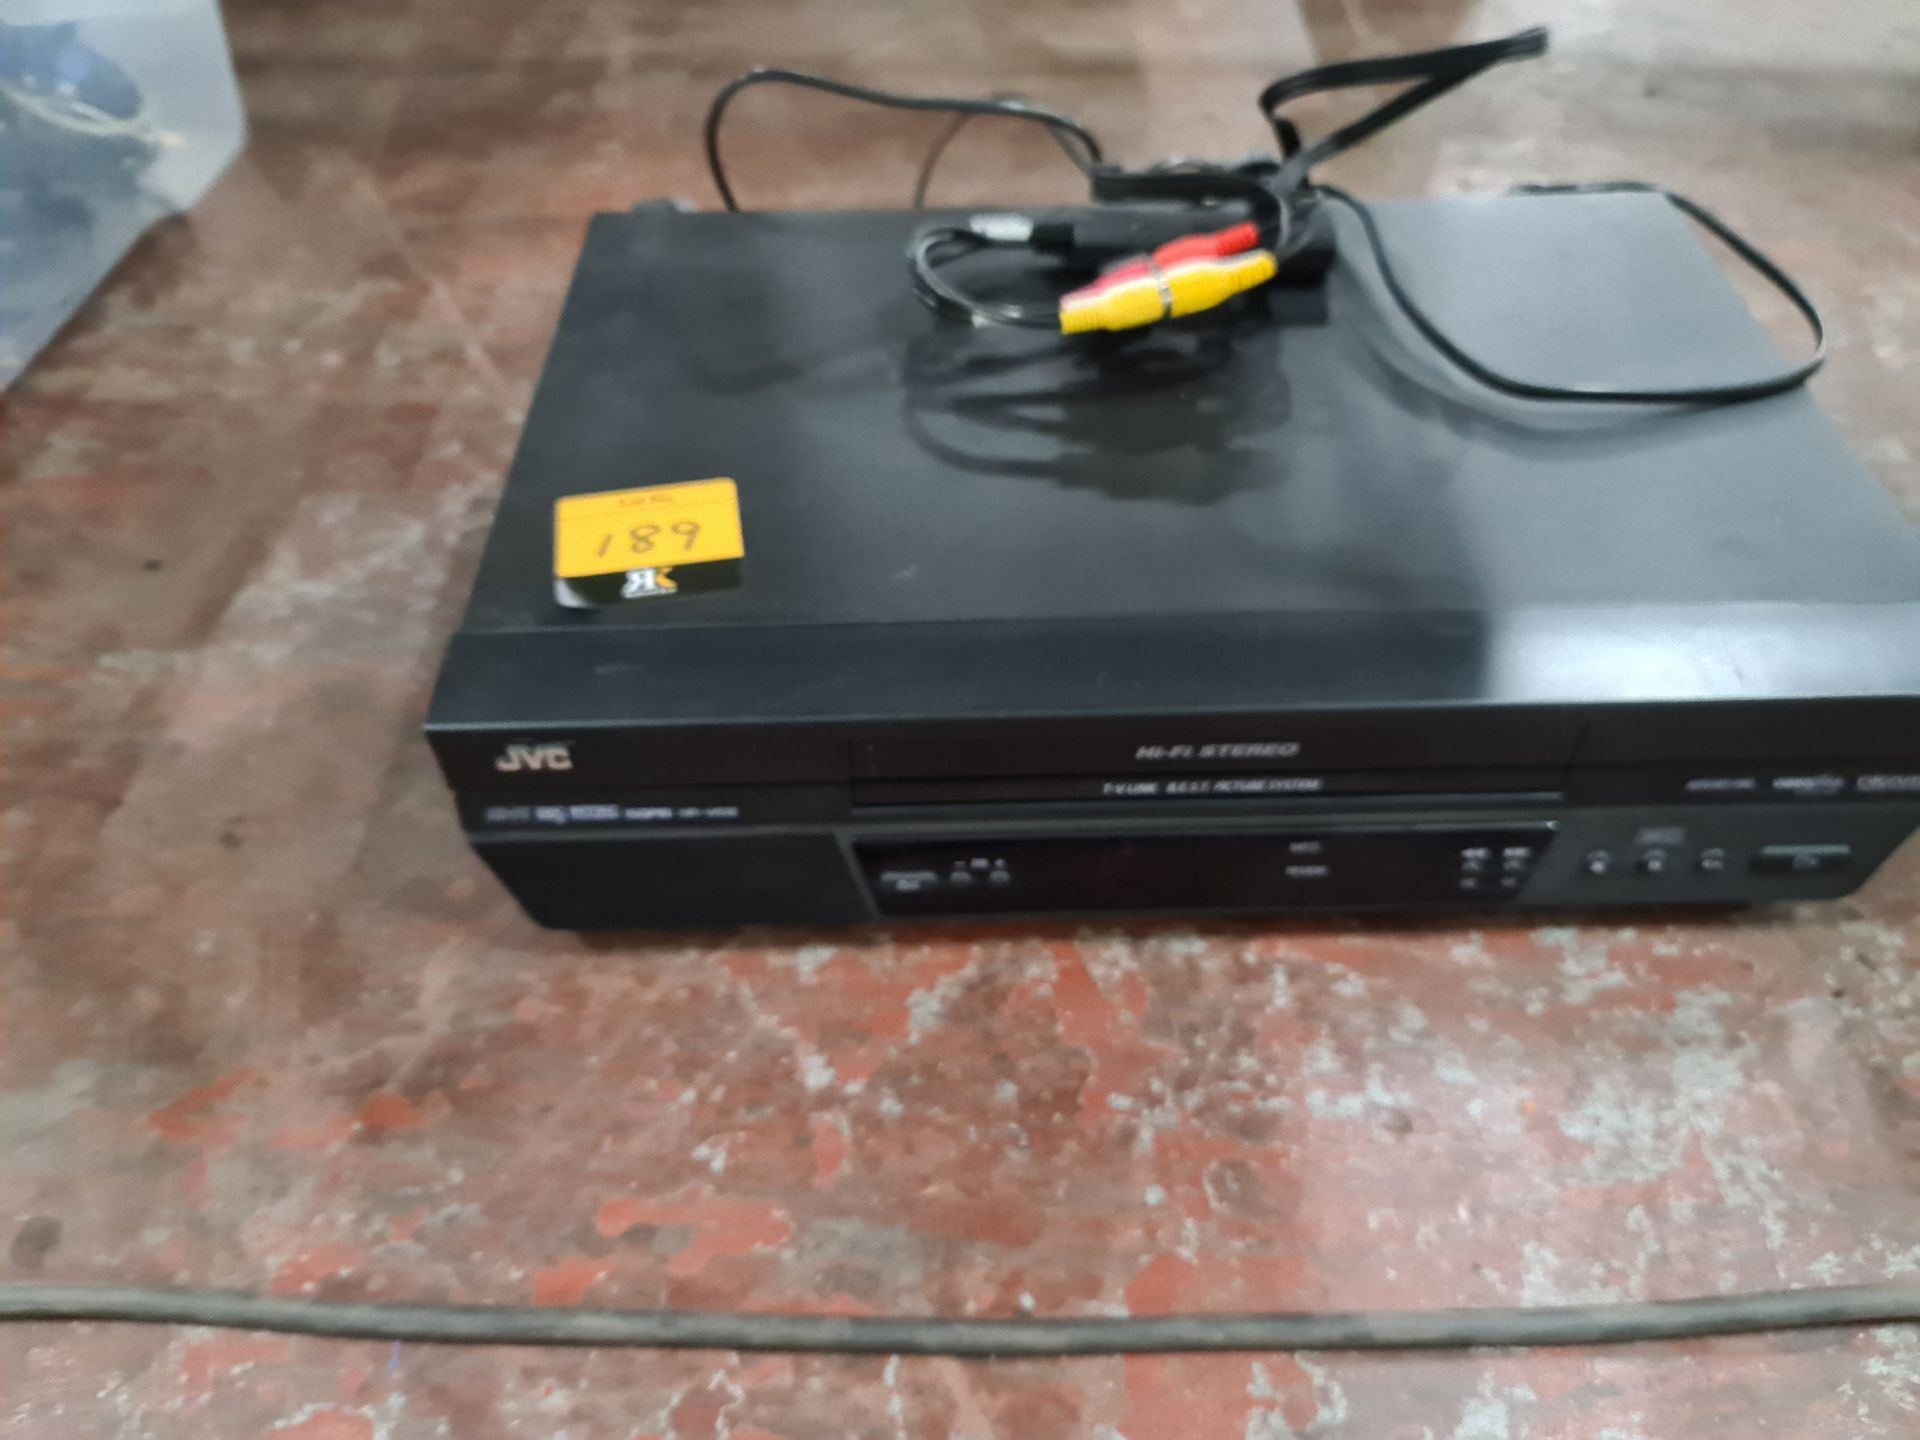 JVC VHS video recorder